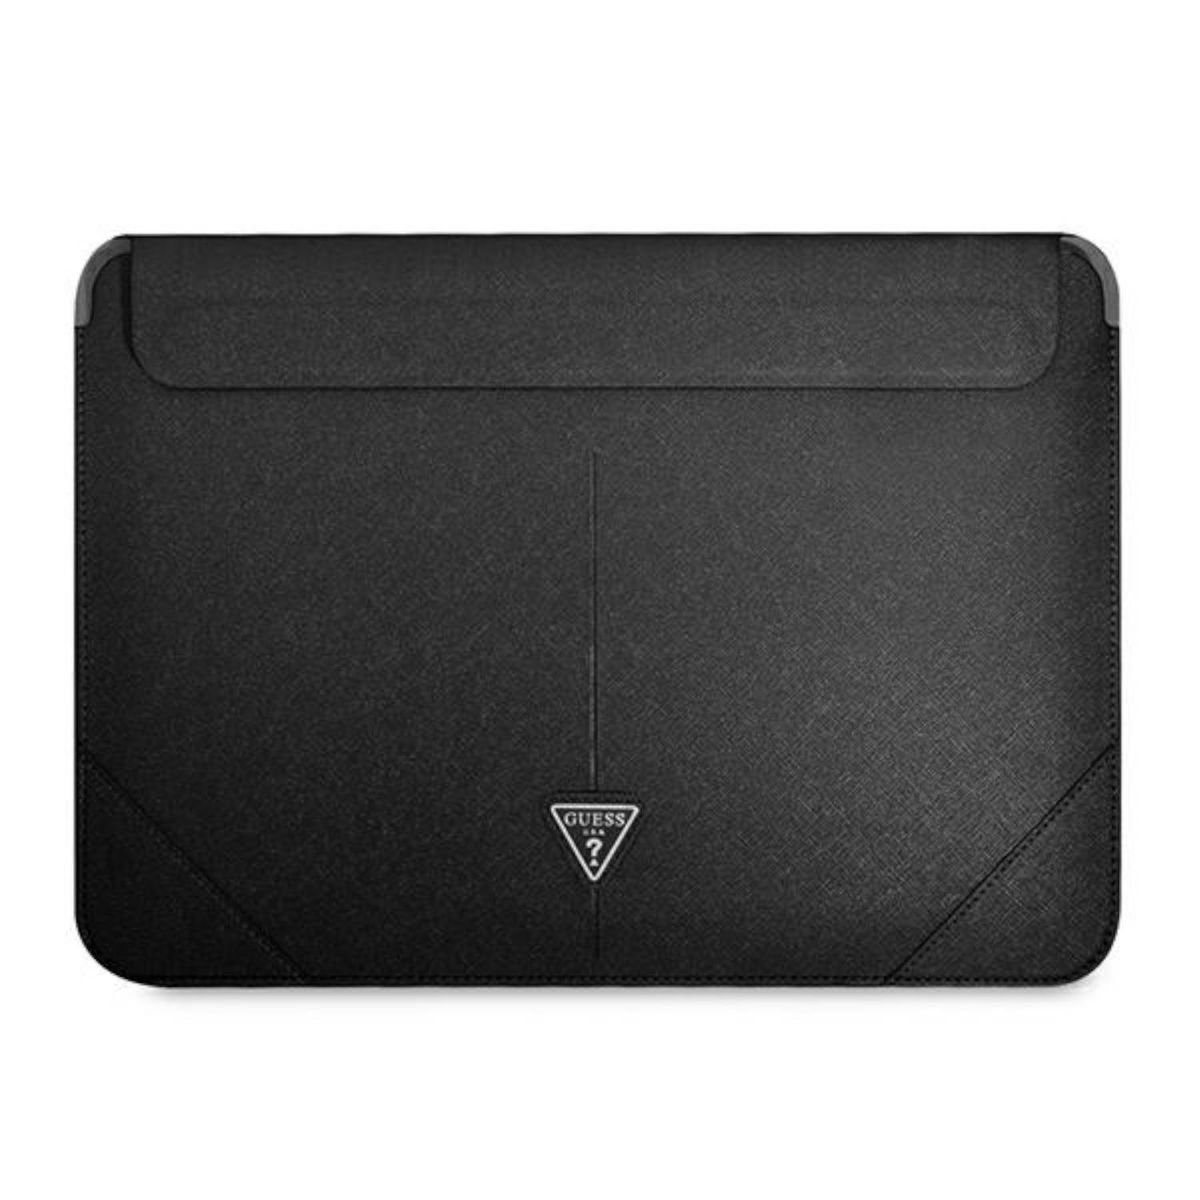 Guess Handyhülle Guess Universal Notebook Laptop Hülle Tasche Cover Triangle Collection Schutzhülle 13 / 14 Zoll Schwarz